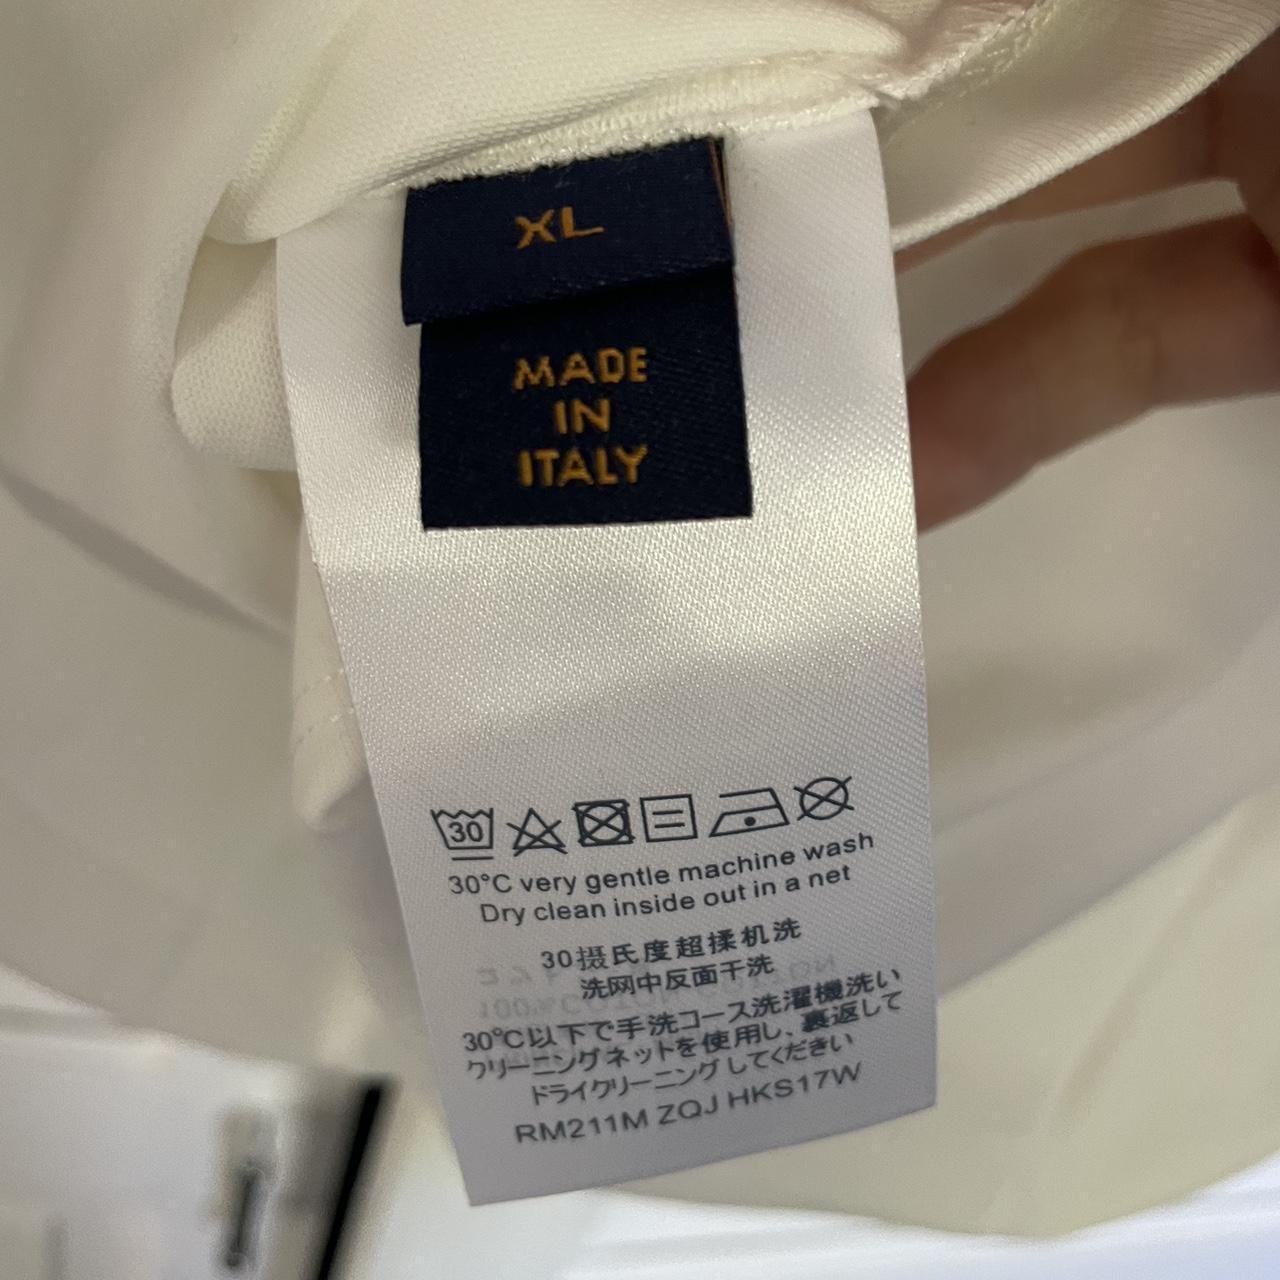 Louis Vuitton mens shirt size XL Excellent condition - Depop